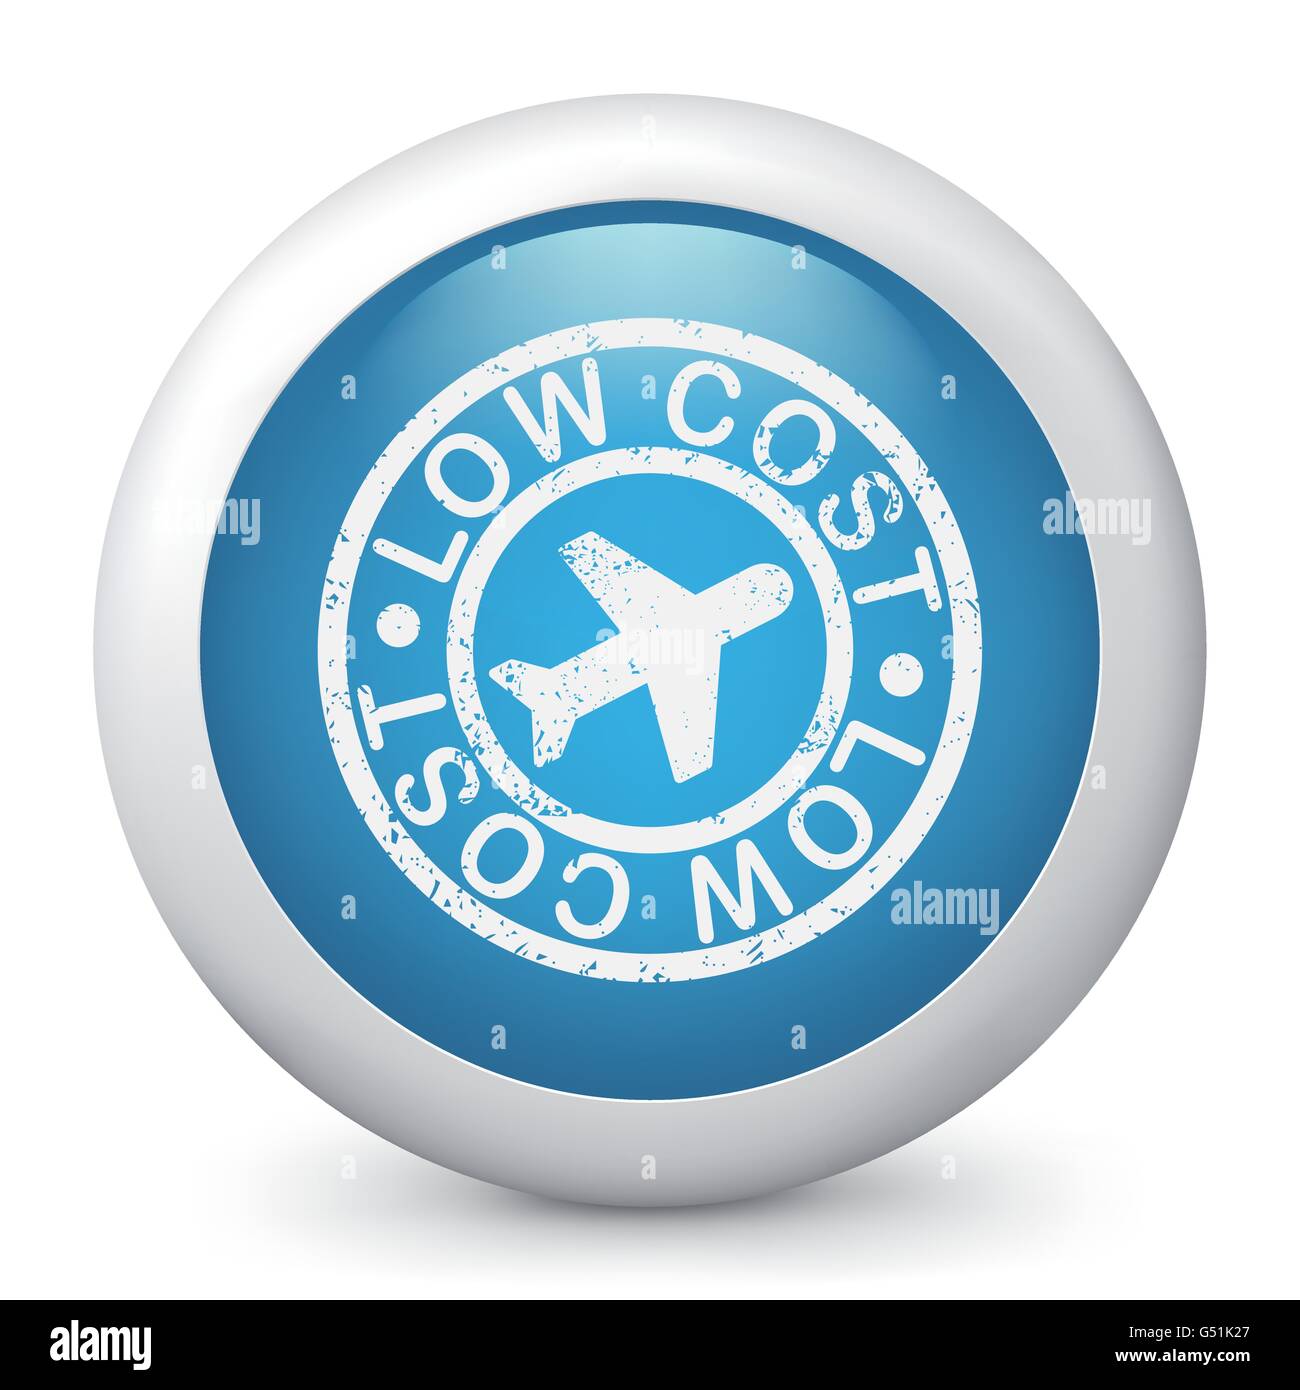 Compagnia aerea a basso costo stilizzato icona grunge Illustrazione Vettoriale